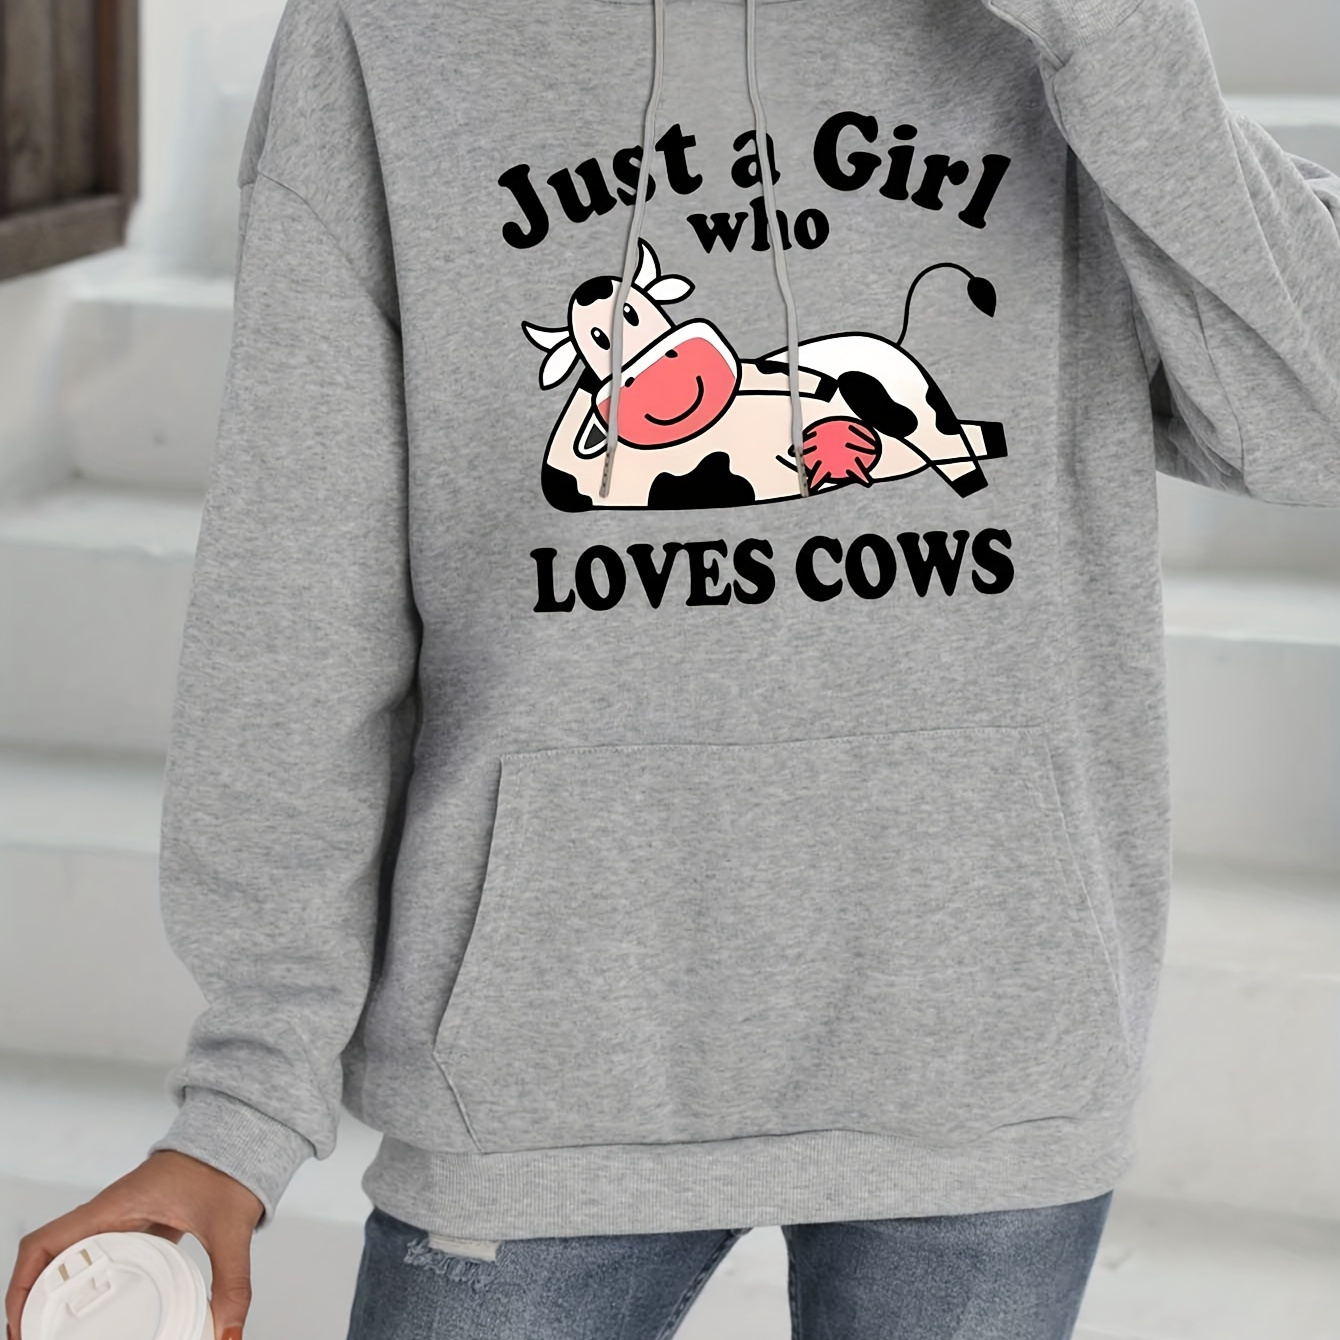 

Cow & Letter Print Drawstring Hoodie, Casual Long Sleeve Kangaroo Pocket Hoodie Sweatshirt, Women's Clothing